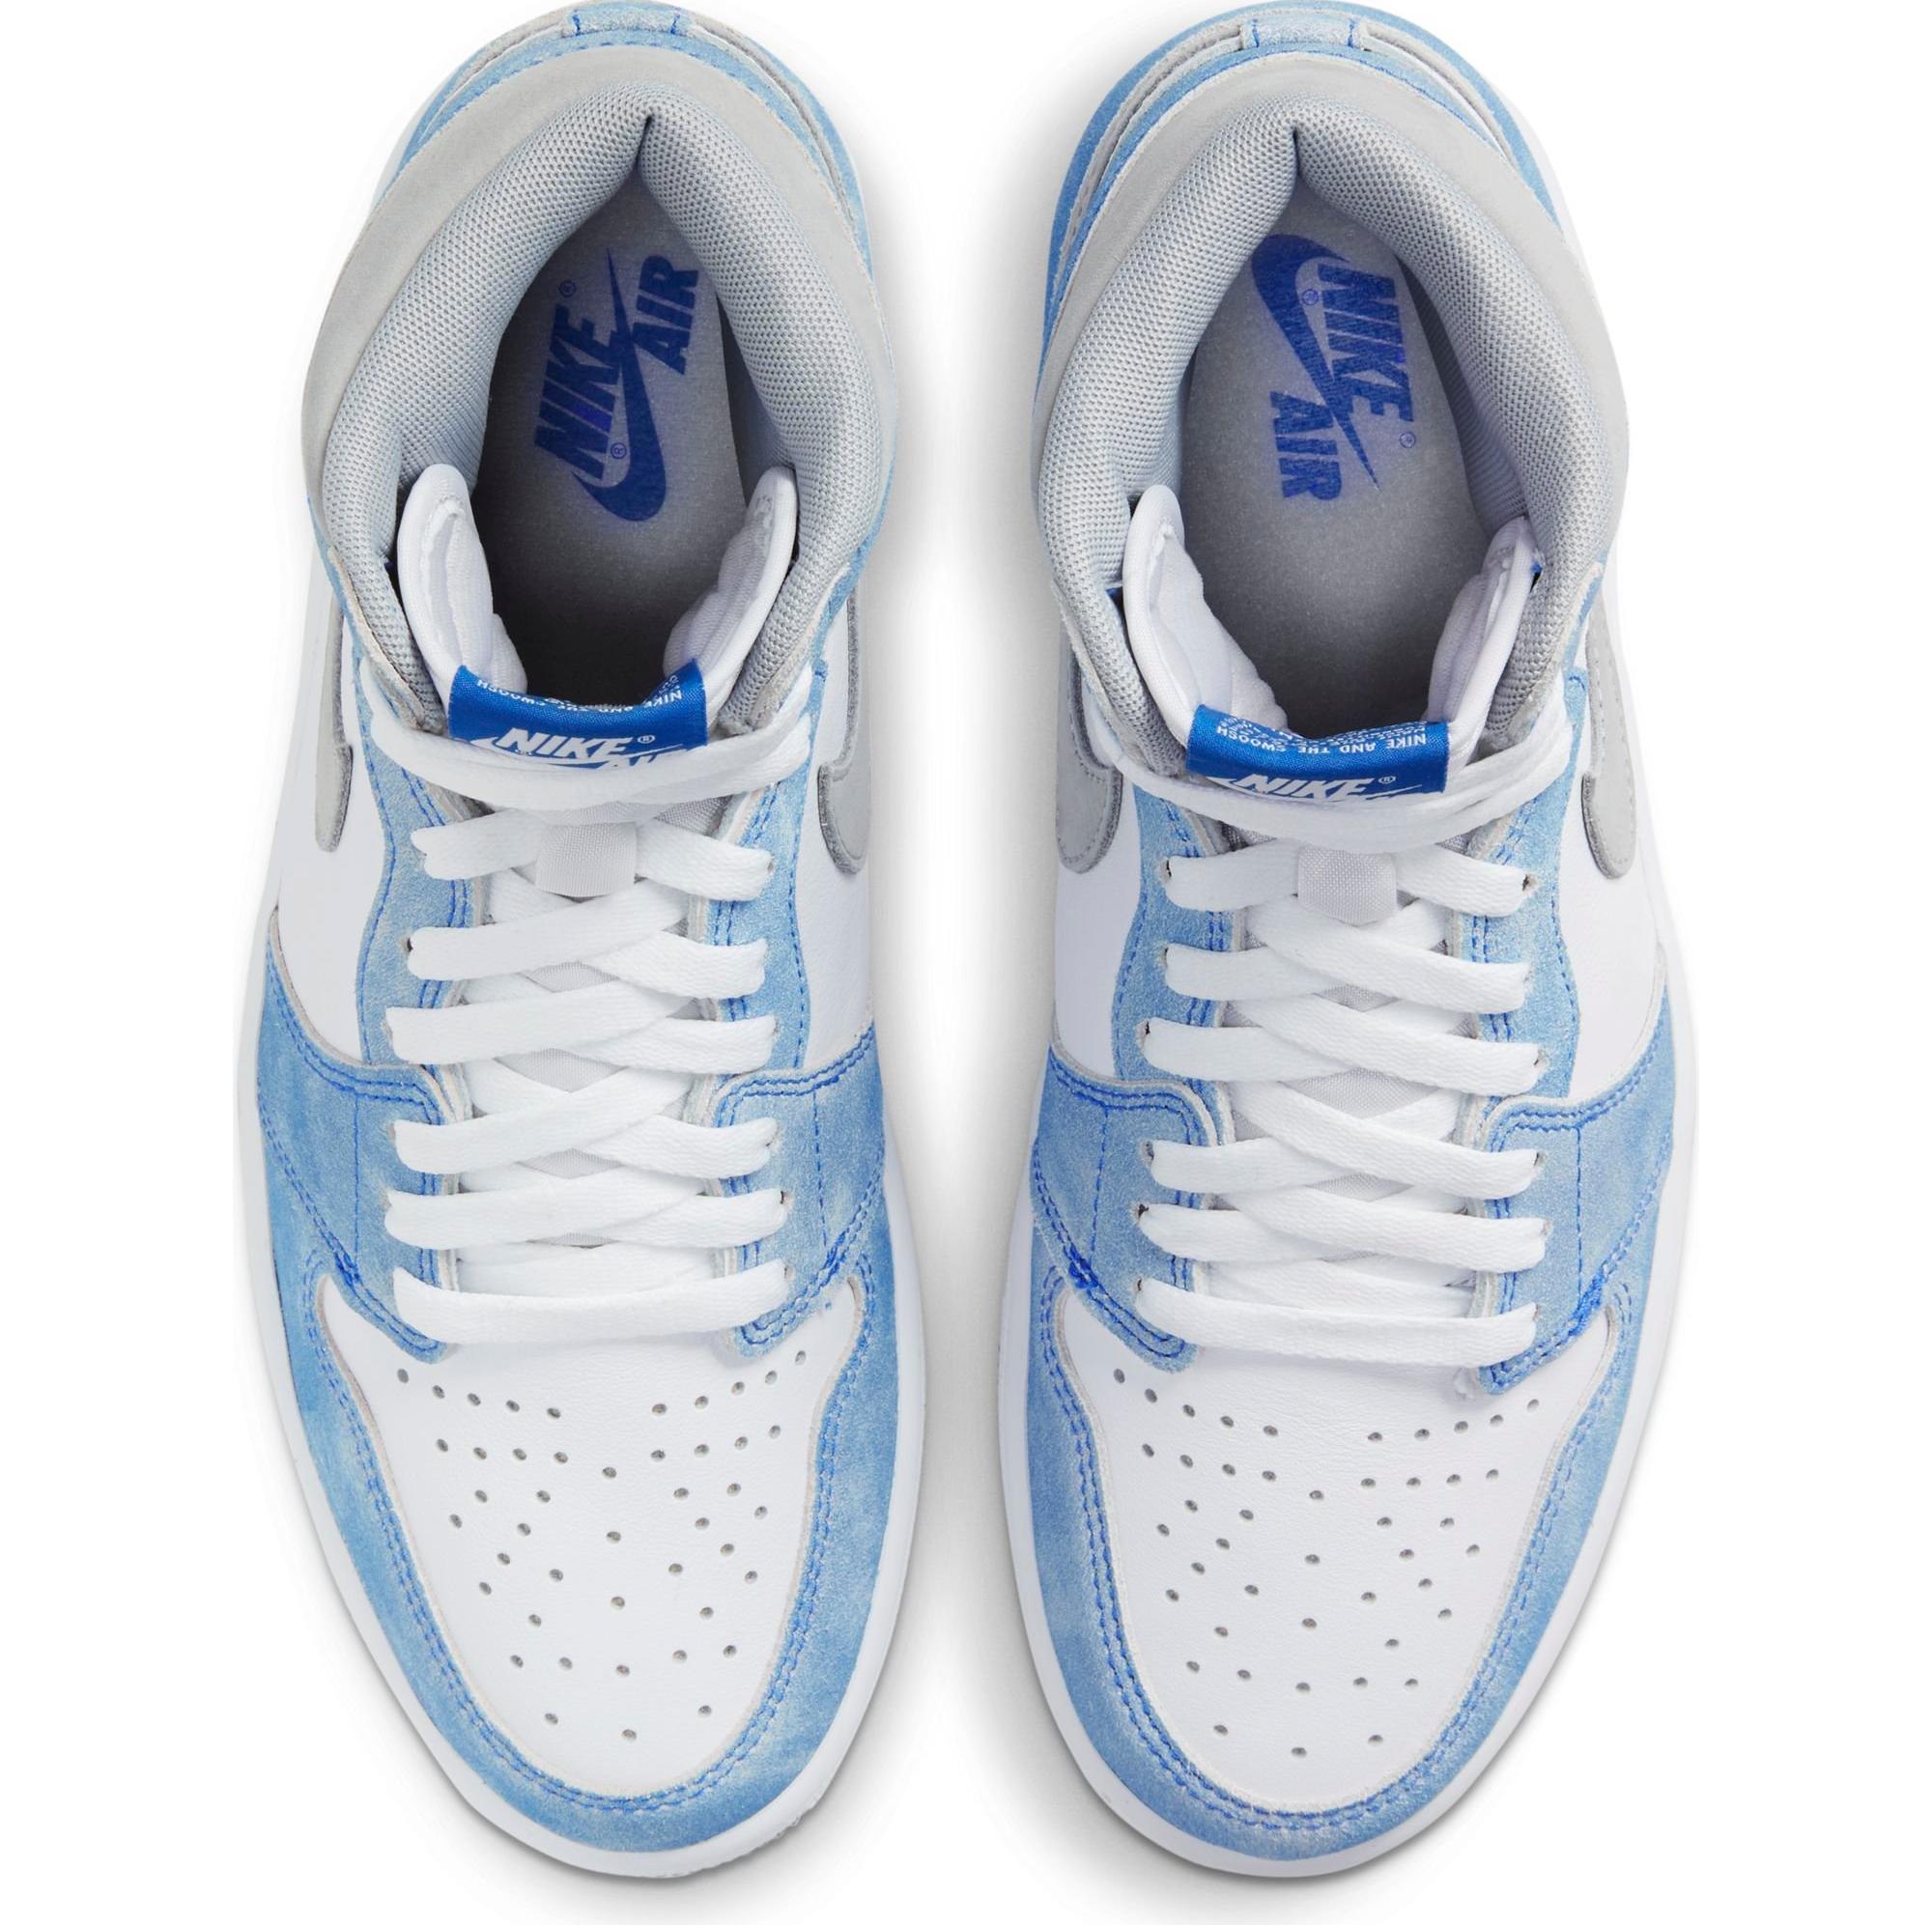 Sneakers Release – Jordan 1 Retro High OG “Hyper Royal ...